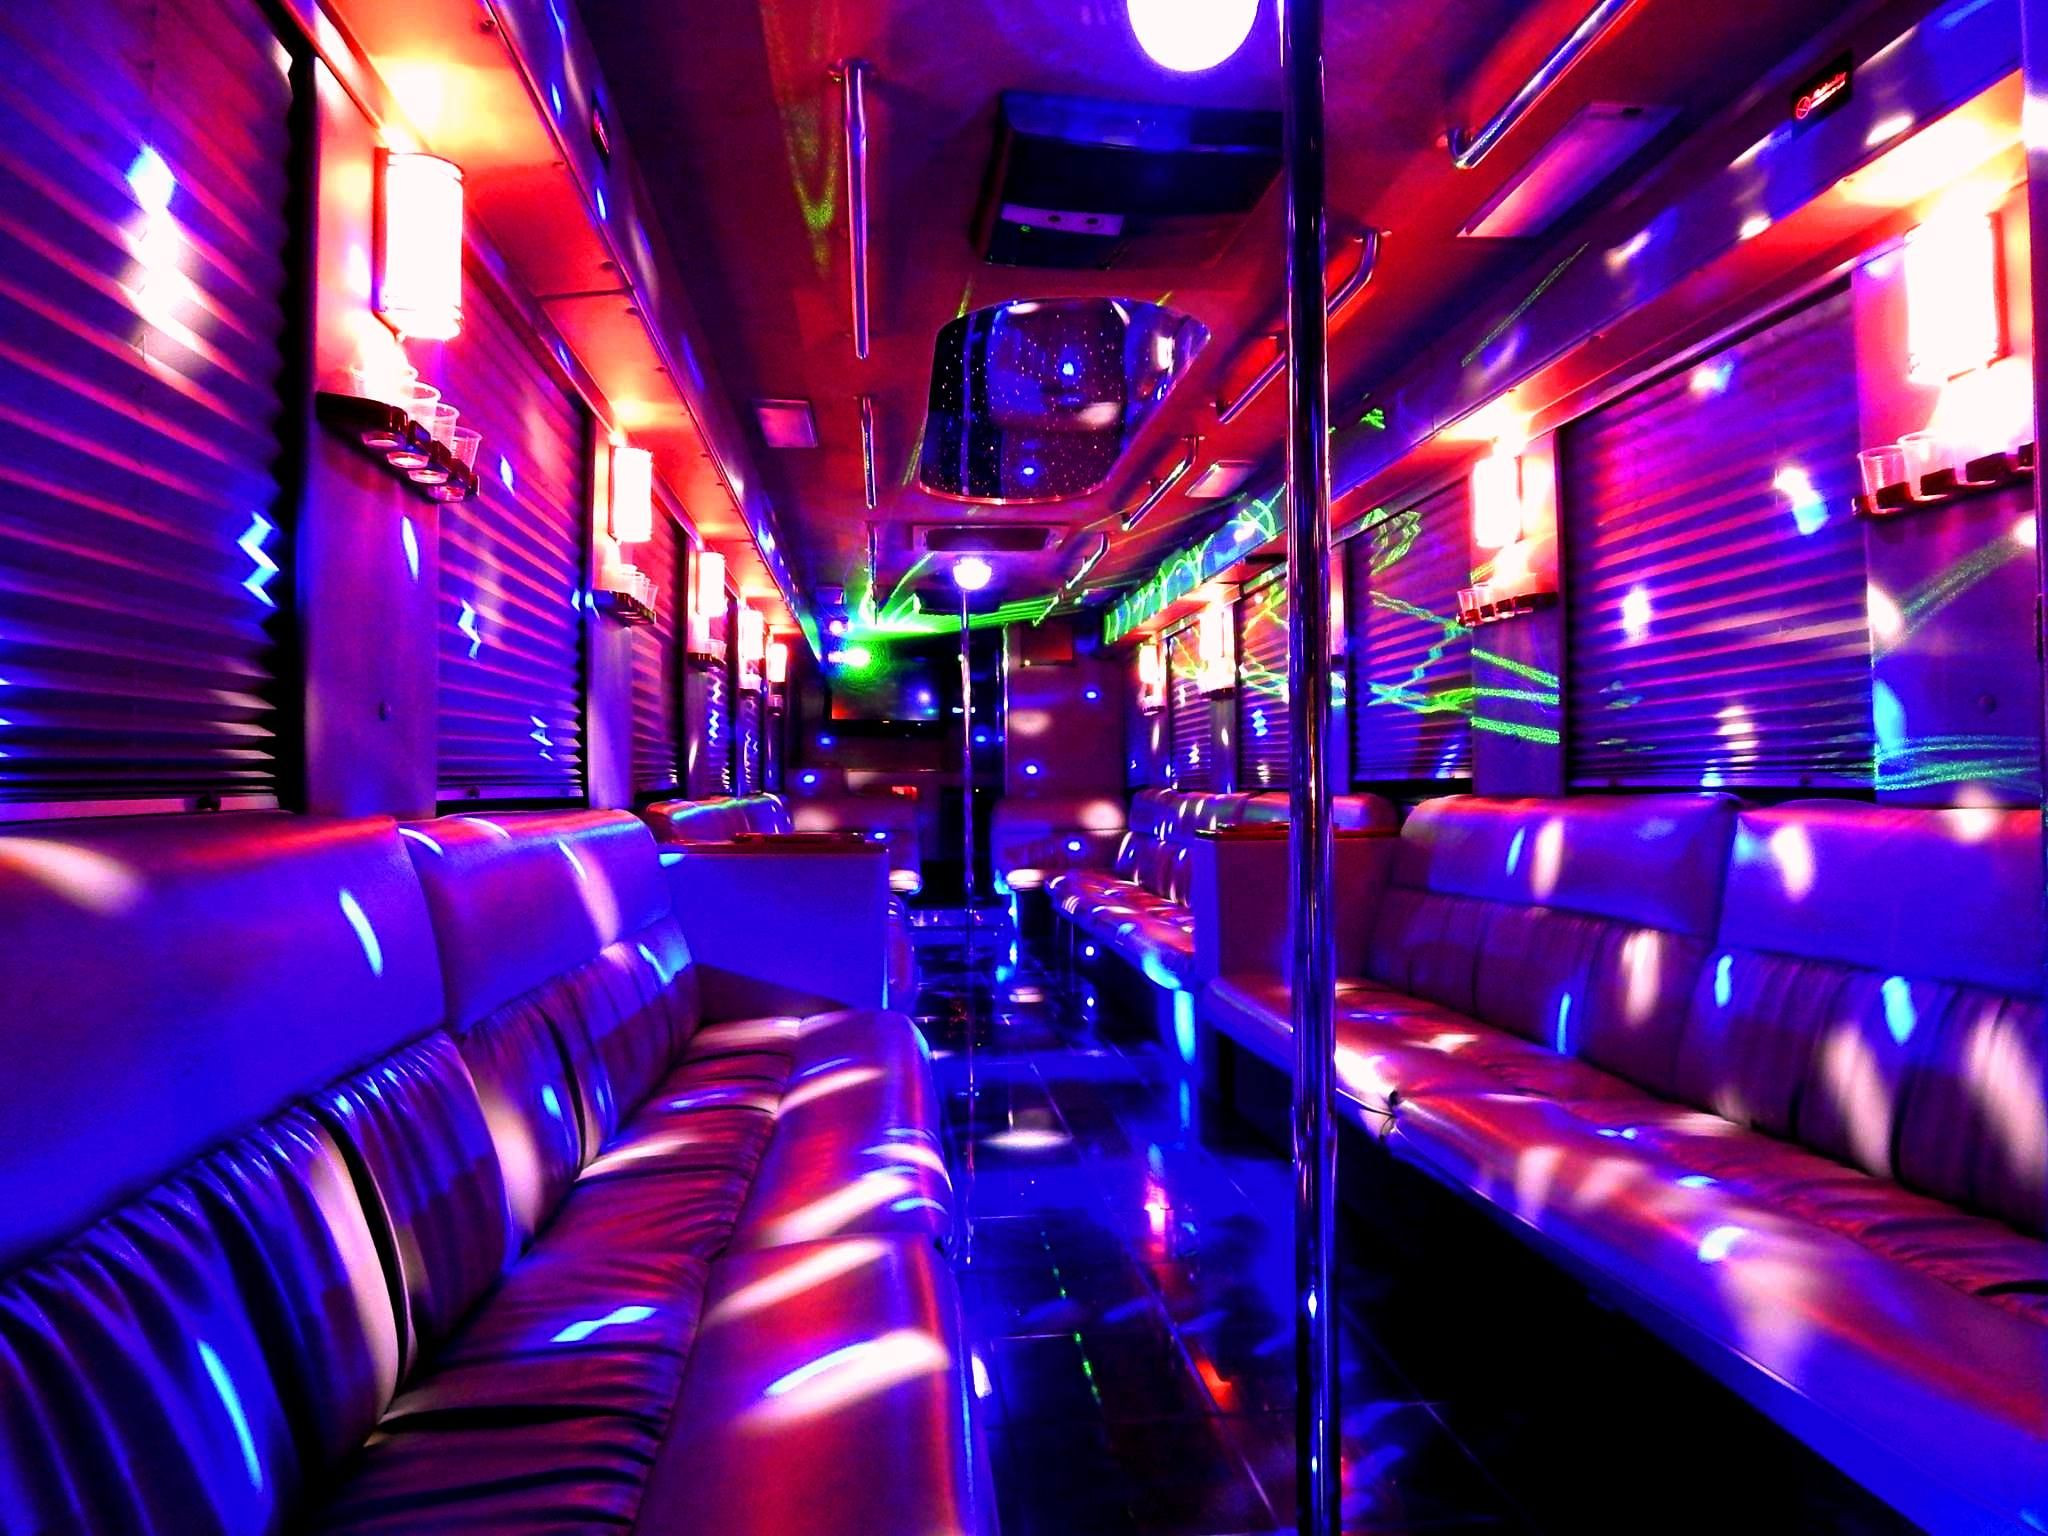 Bachelorette Party Bus Ideas
 ULTIMATE 8 Mercedes 44 passenger Party Bus interior Plush